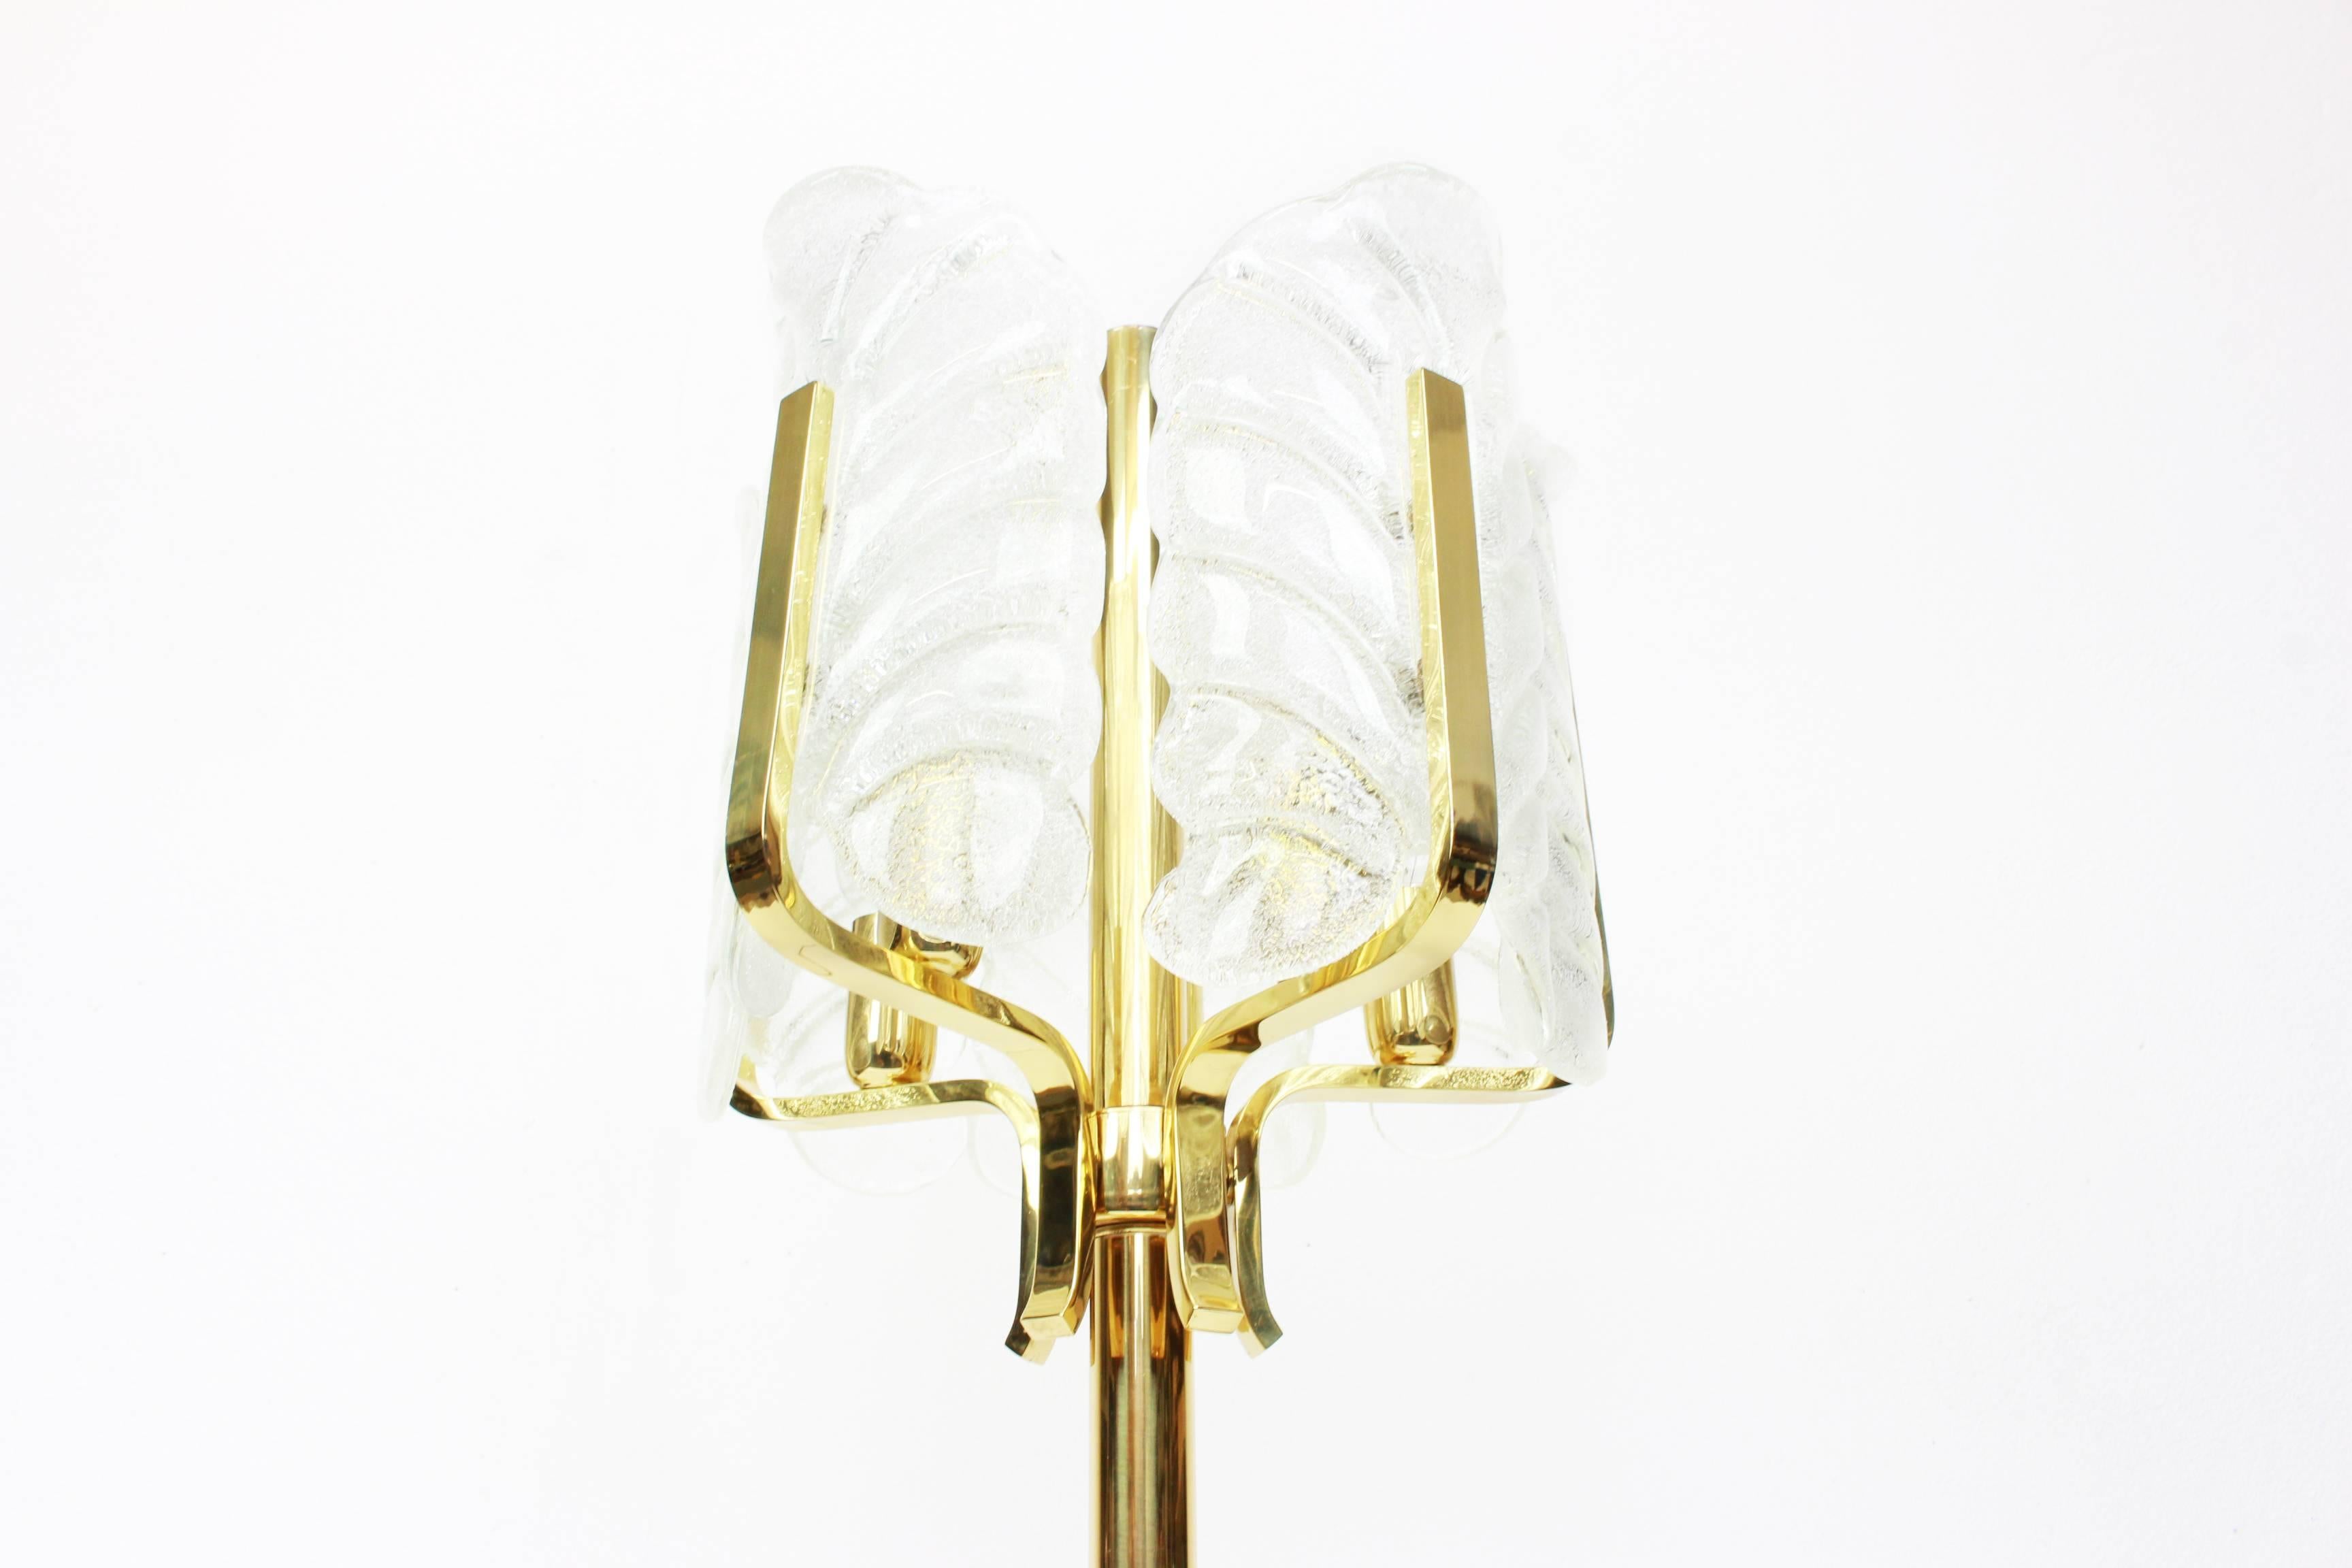 Sehr glamouröse Tischlampe, entworfen von Carl Fagerlund für Orrefors, Schweden, hergestellt in der Mitte des Jahrhunderts, ca. 1960-1969.
Die Leuchte hat einen Rahmen aus poliertem Messing mit fünf wunderschönen Murano-Glasblättern, die innen